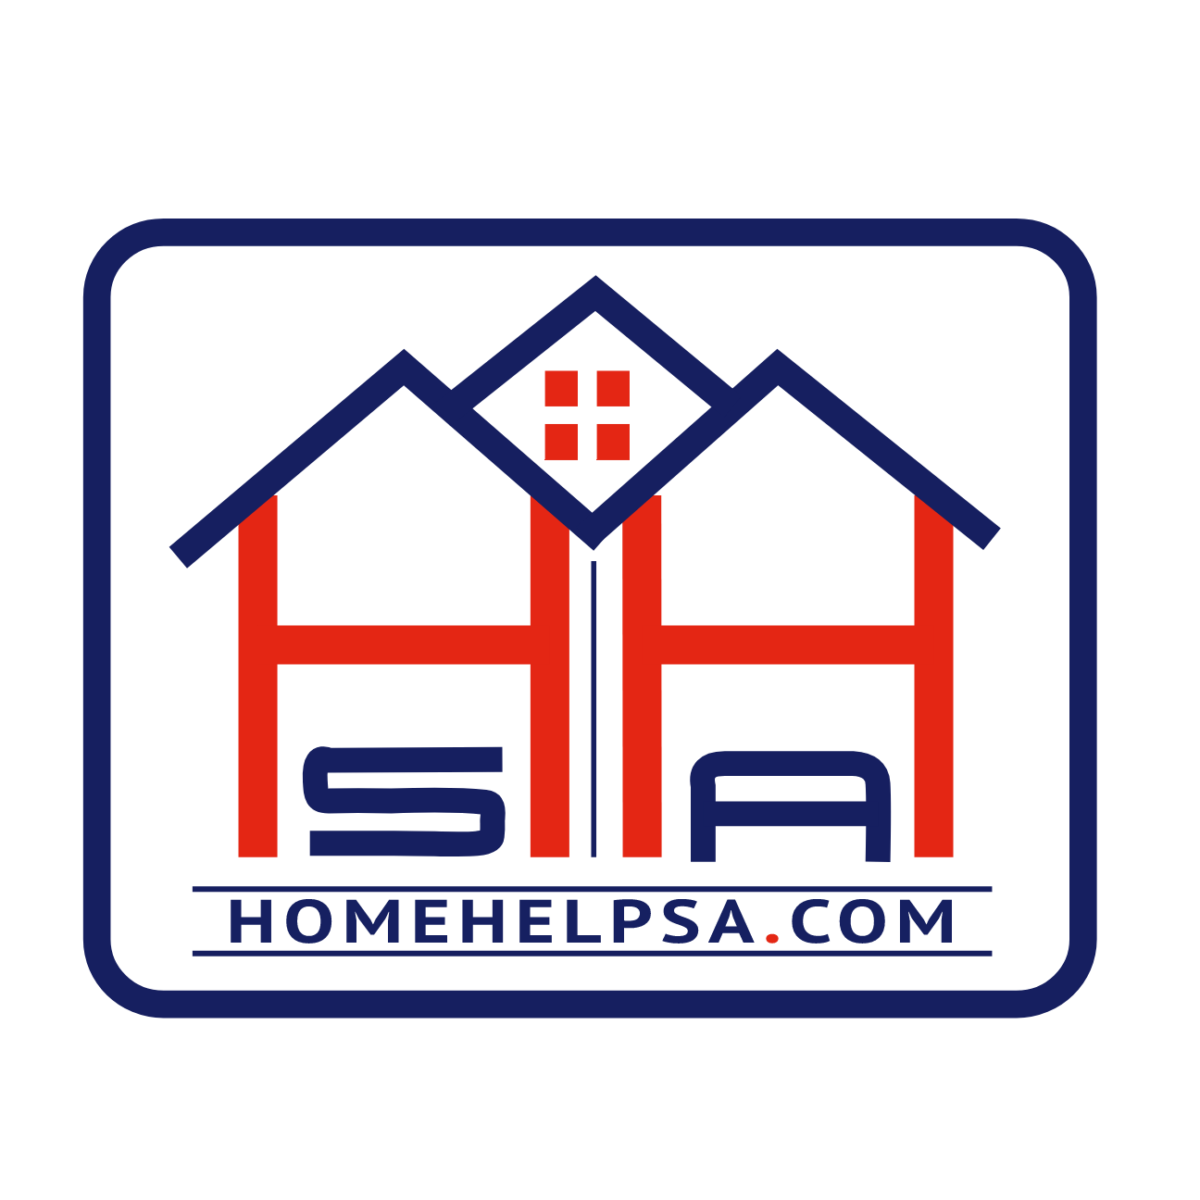 Home Help SA logo